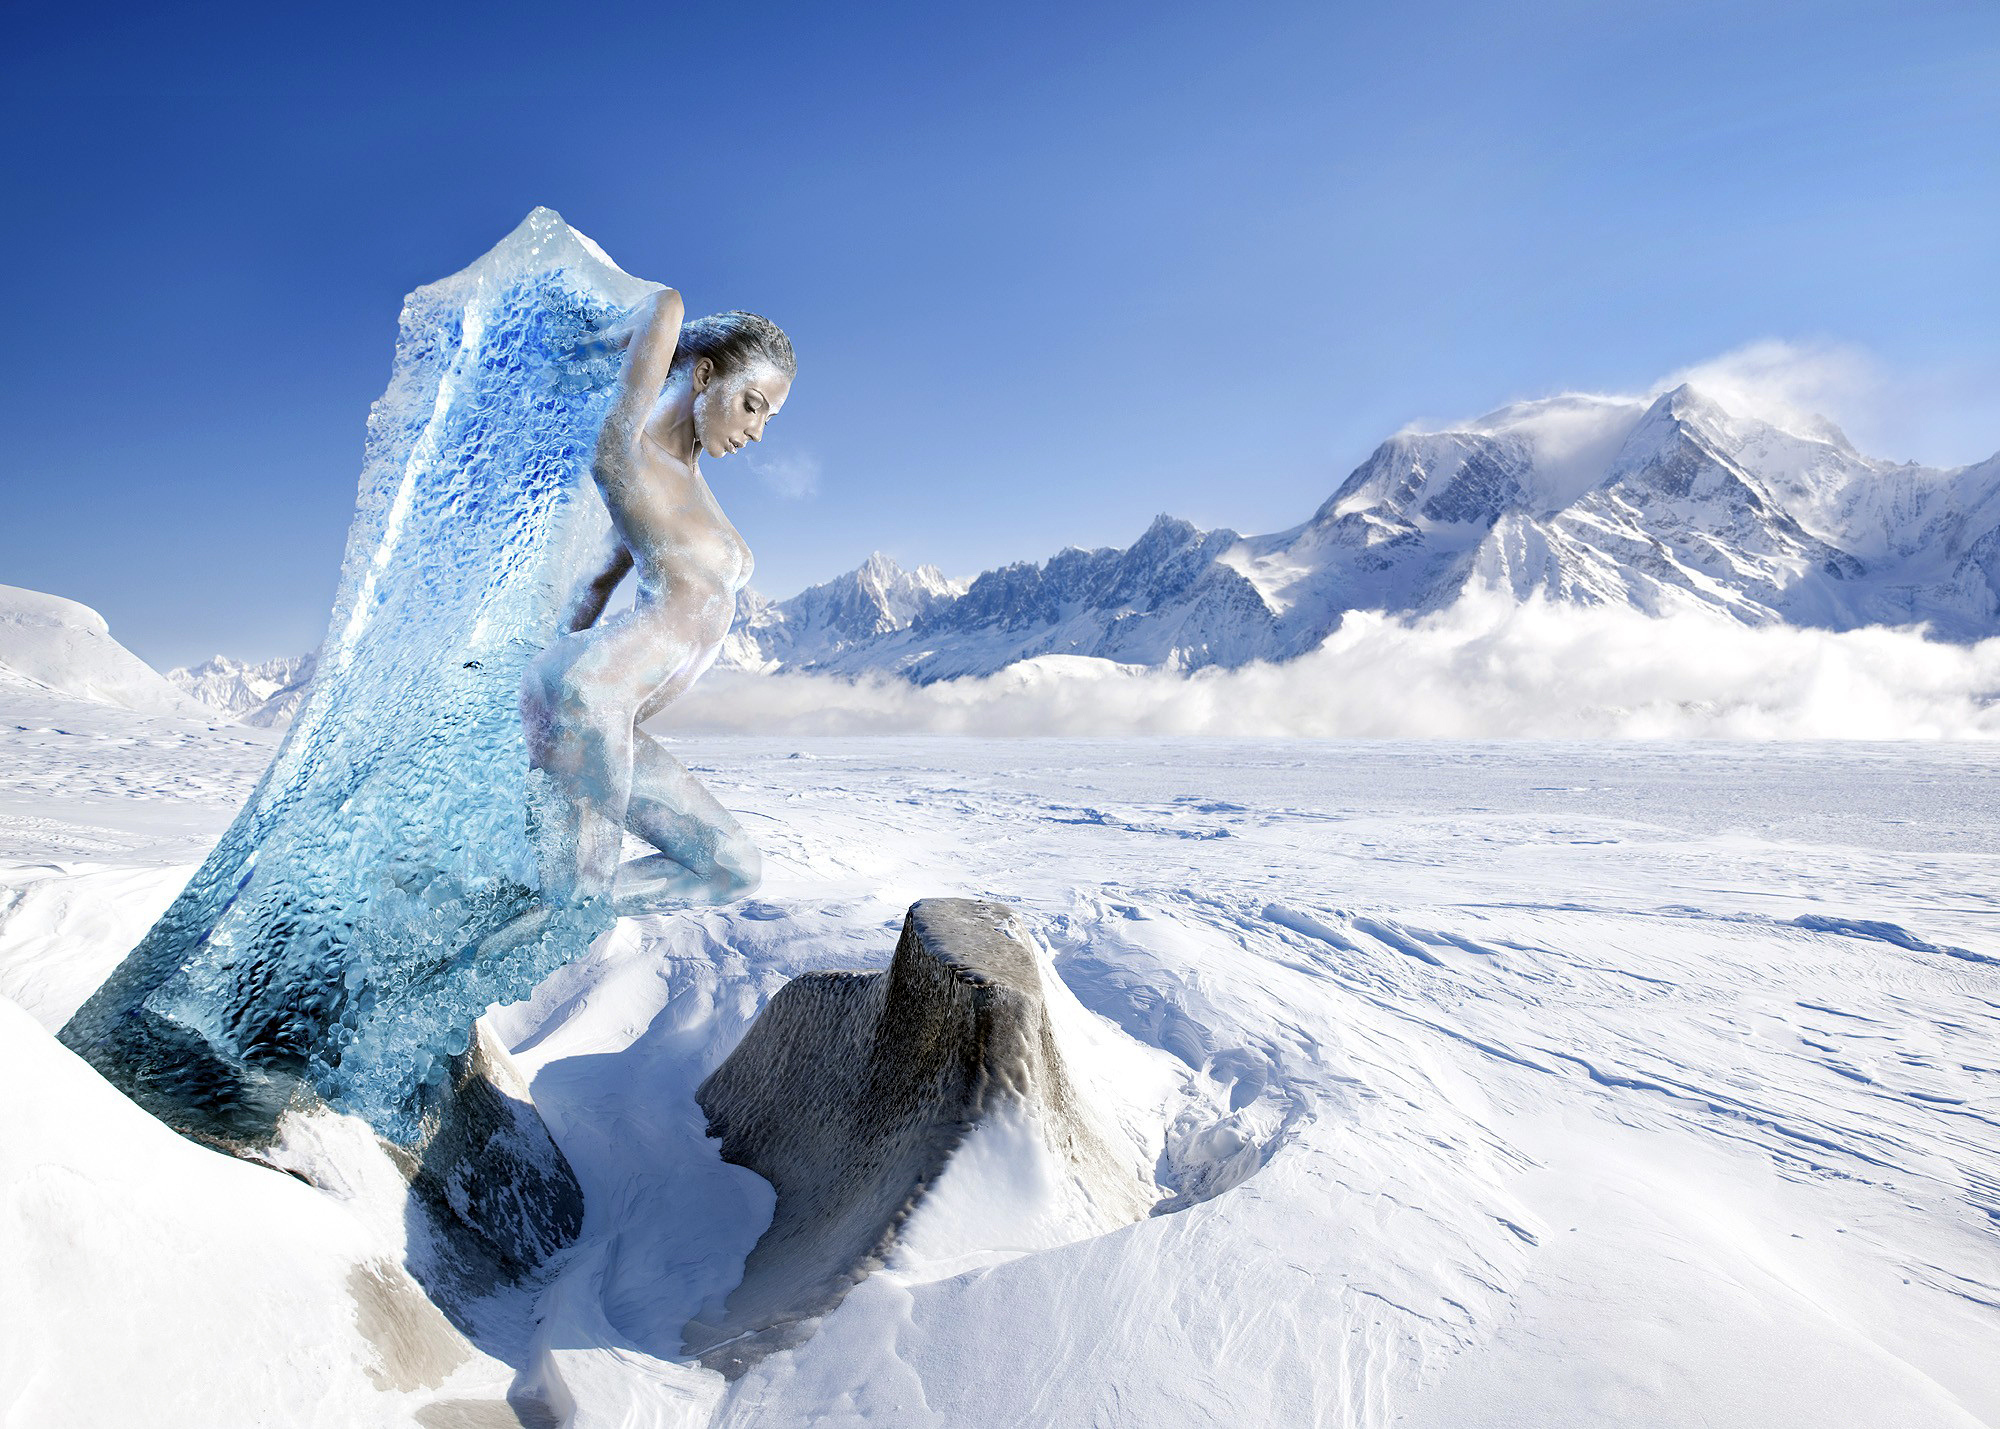 Annamorozova ice. Девушка в снежных горах. Фотосессия в горах зимой. Девушка в горах зима. Девушка во льду.